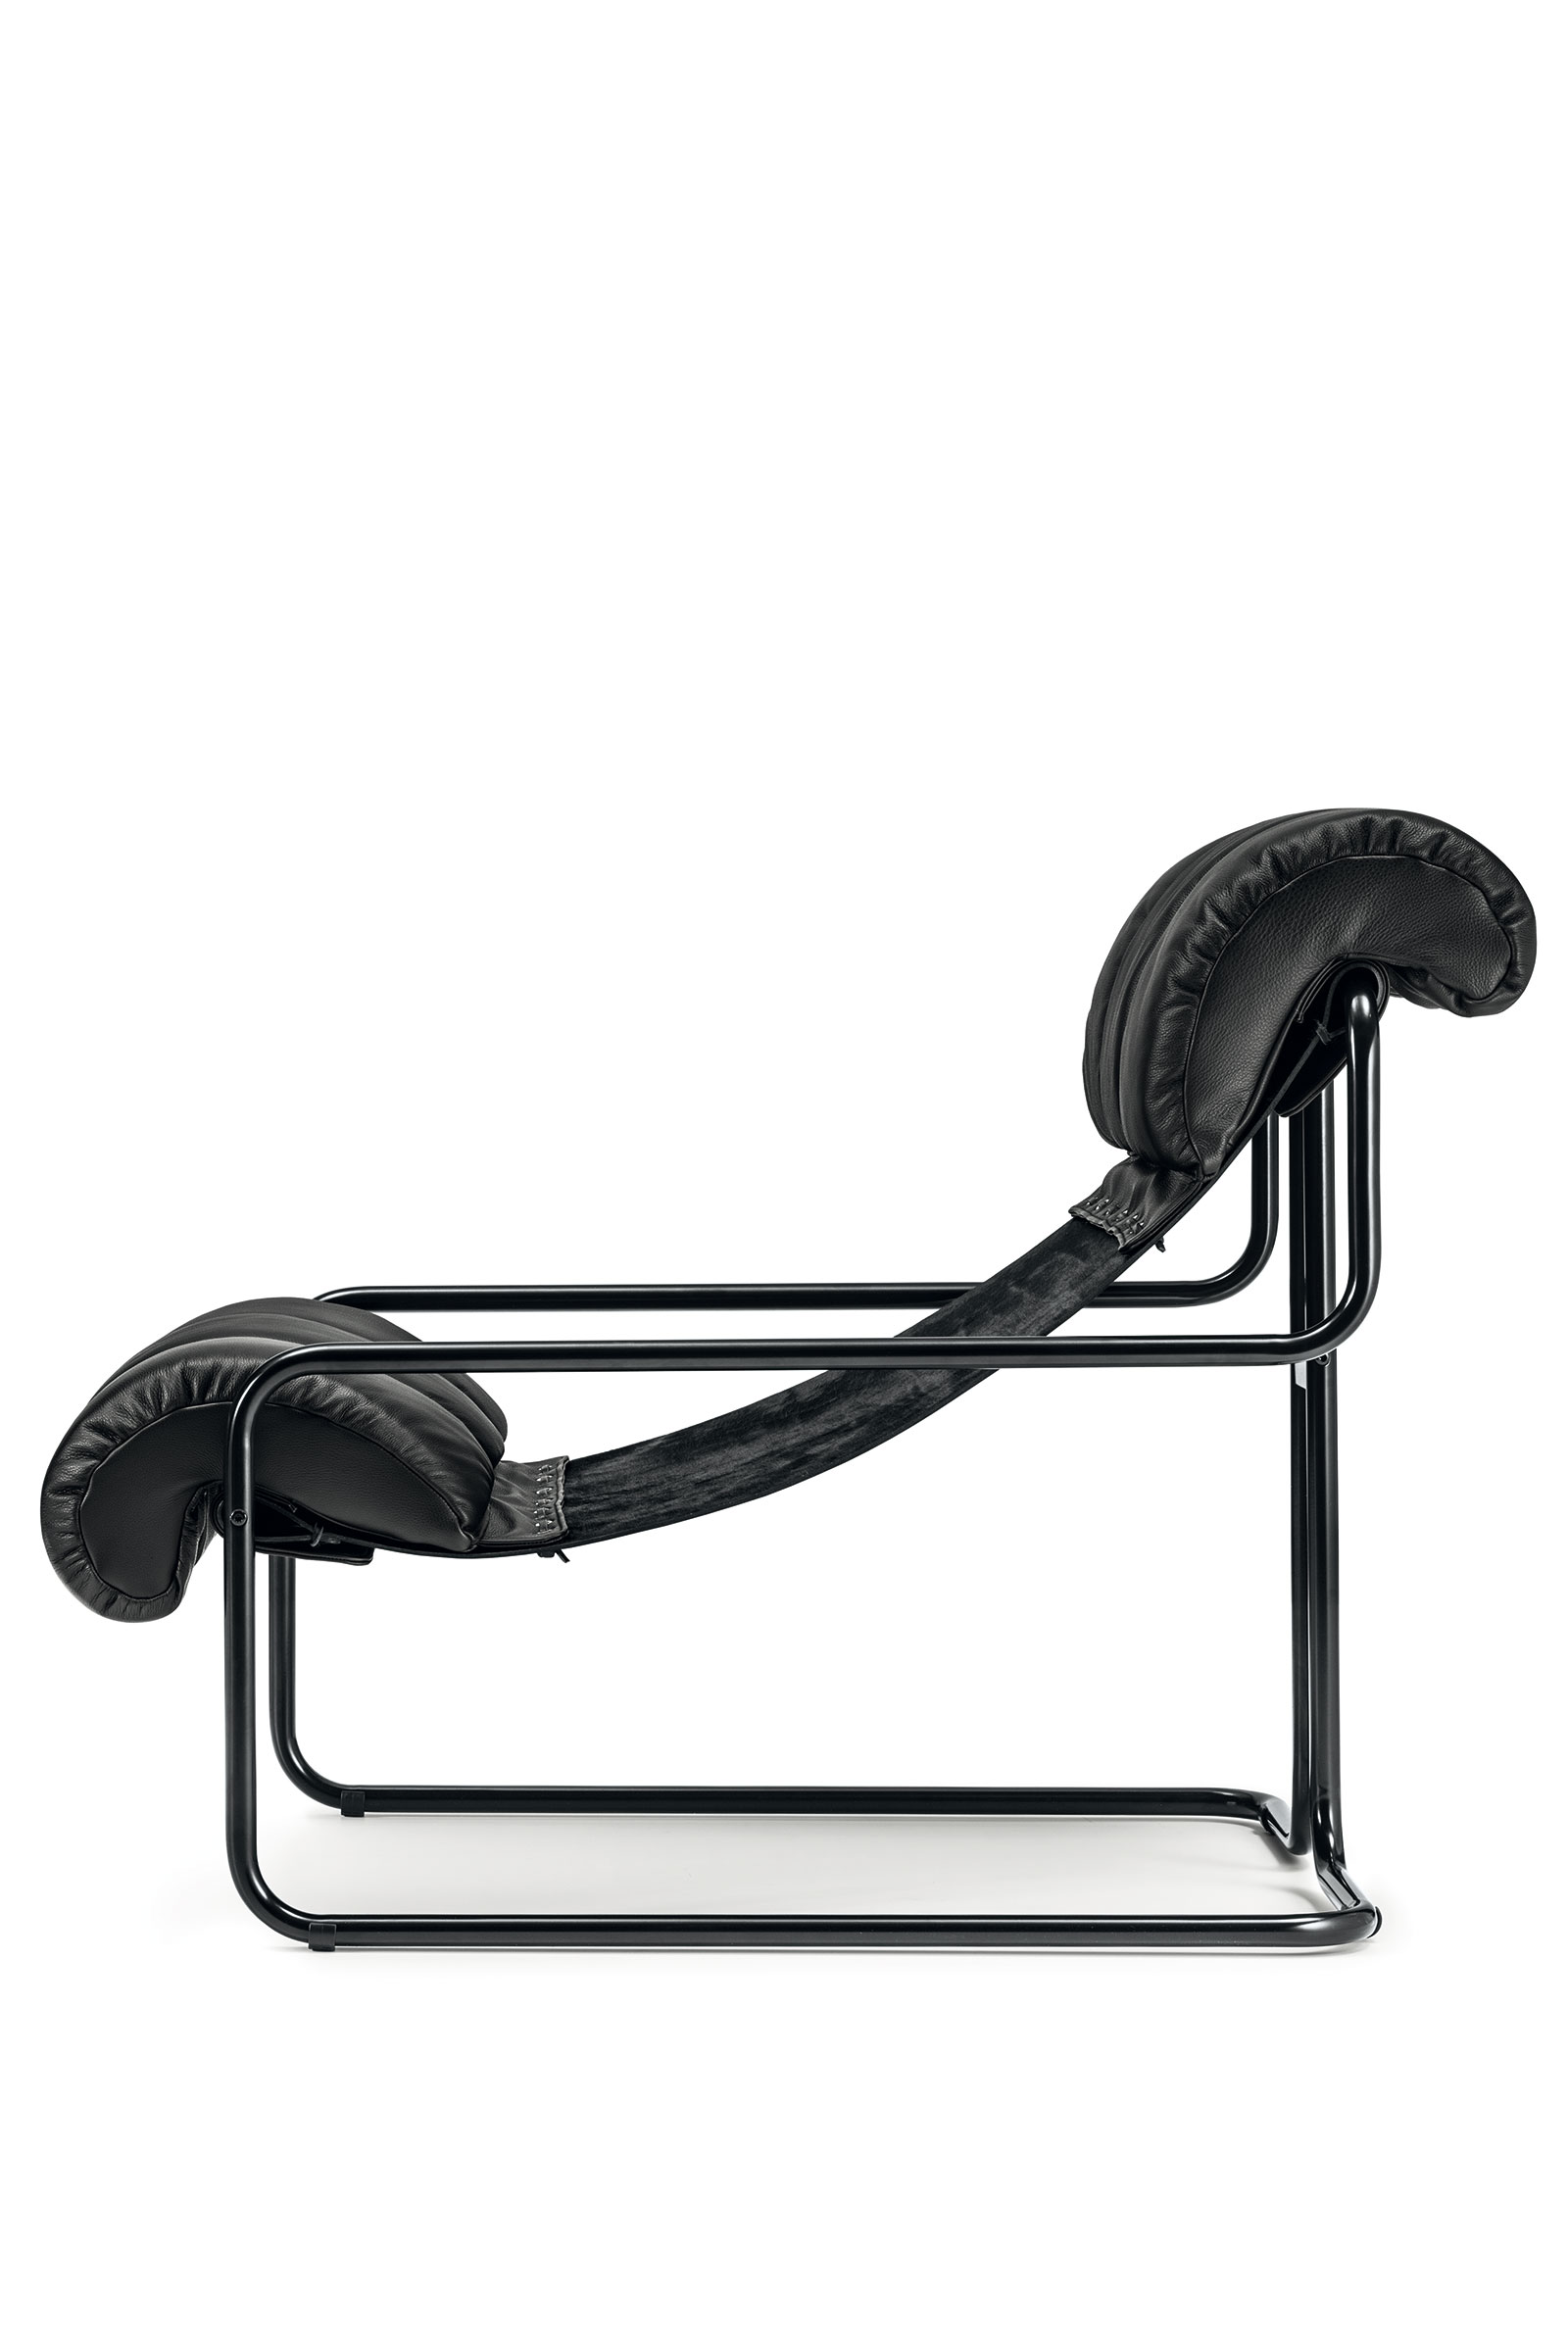 La chaise longue nera in pelle Tucroma è stata disegnata nel 1971 da Guido Faleschini. Produzione italiana, vendita online, consegna gratuita a domicilio.